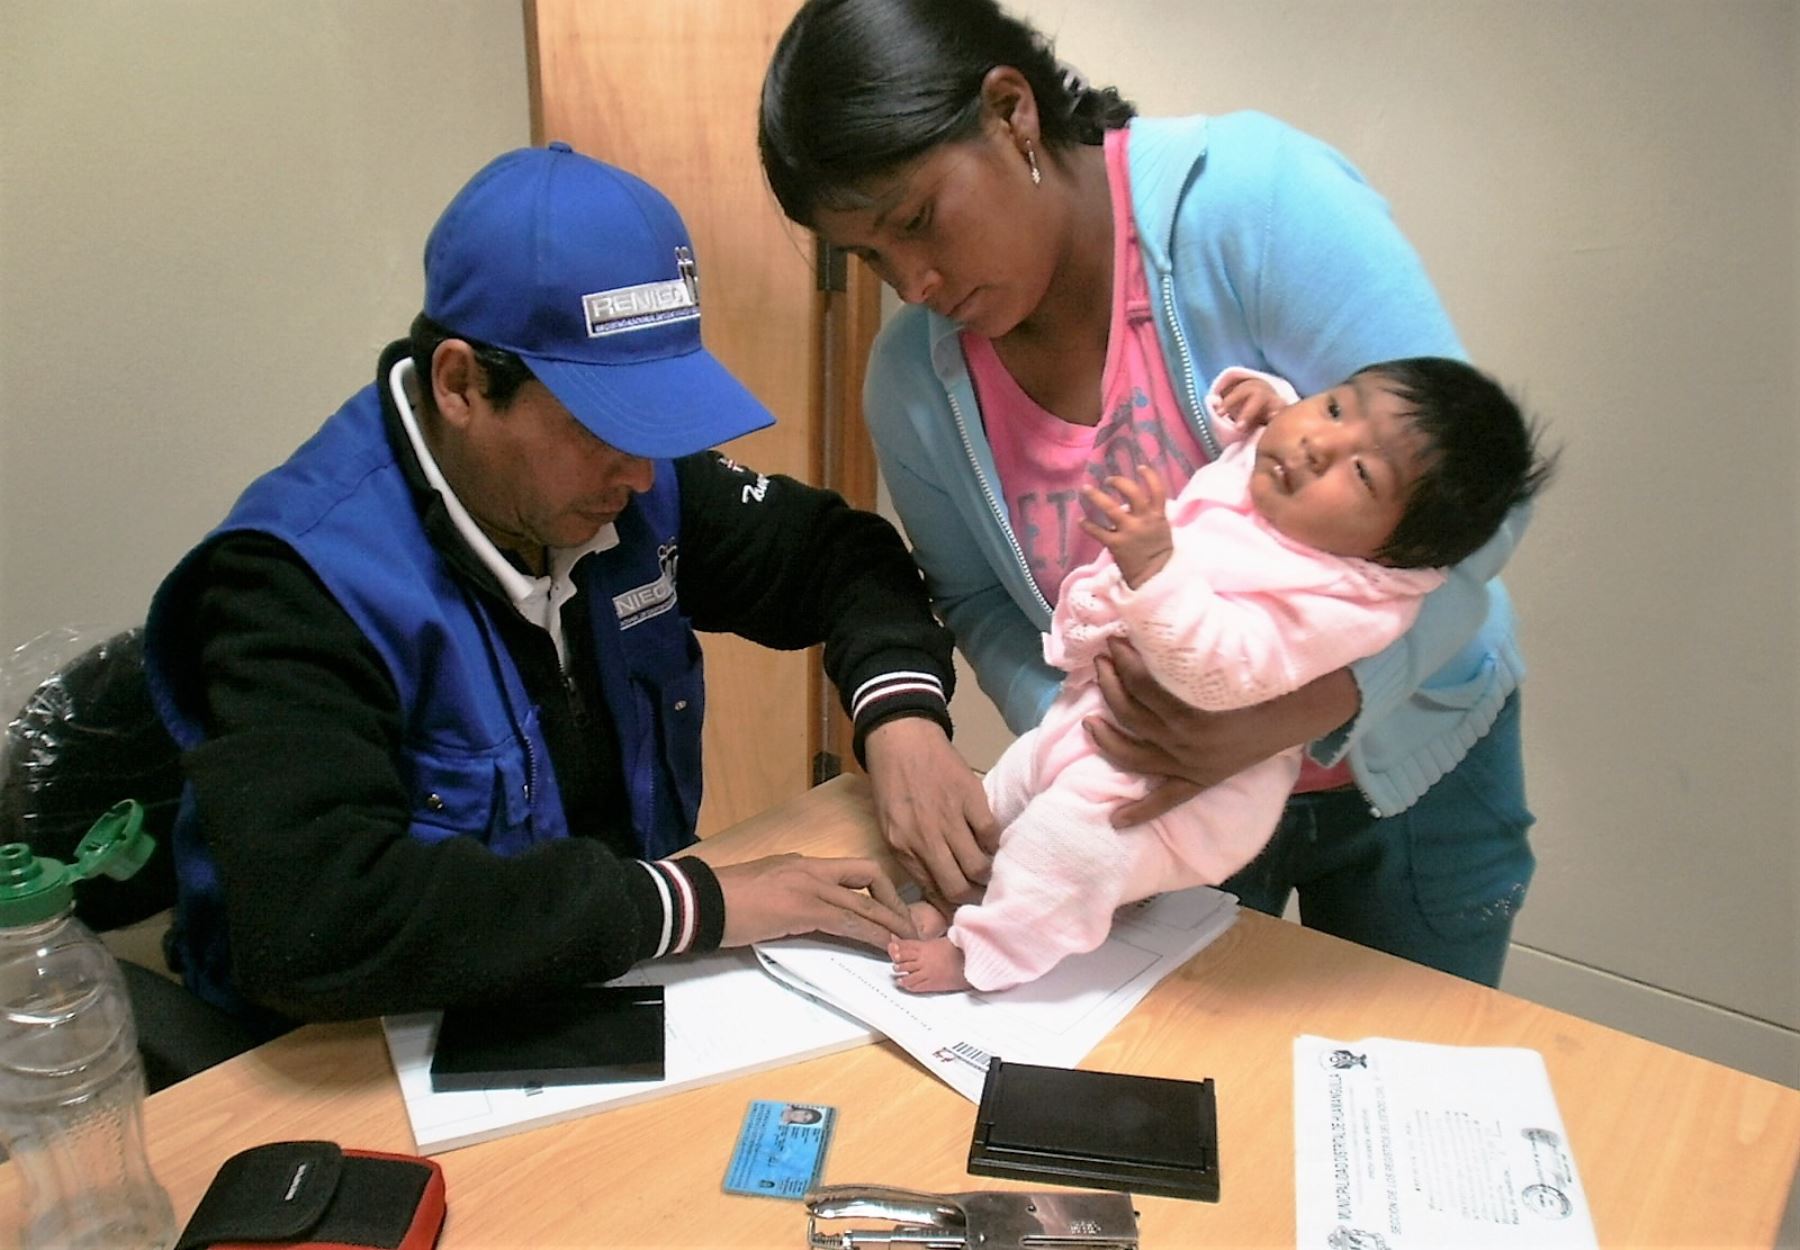 El Programa de Acción para la Inclusión Social (PAÍS), que unifica los programas Tambos y PIAS, beneficiará a más de 4 millones de peruanos de las zonas amazónicas y andinas en situación de extrema pobreza, sostuvo el Ministerio de Desarrollo e Inclusión Social (Midis). ANDINA/Difusión